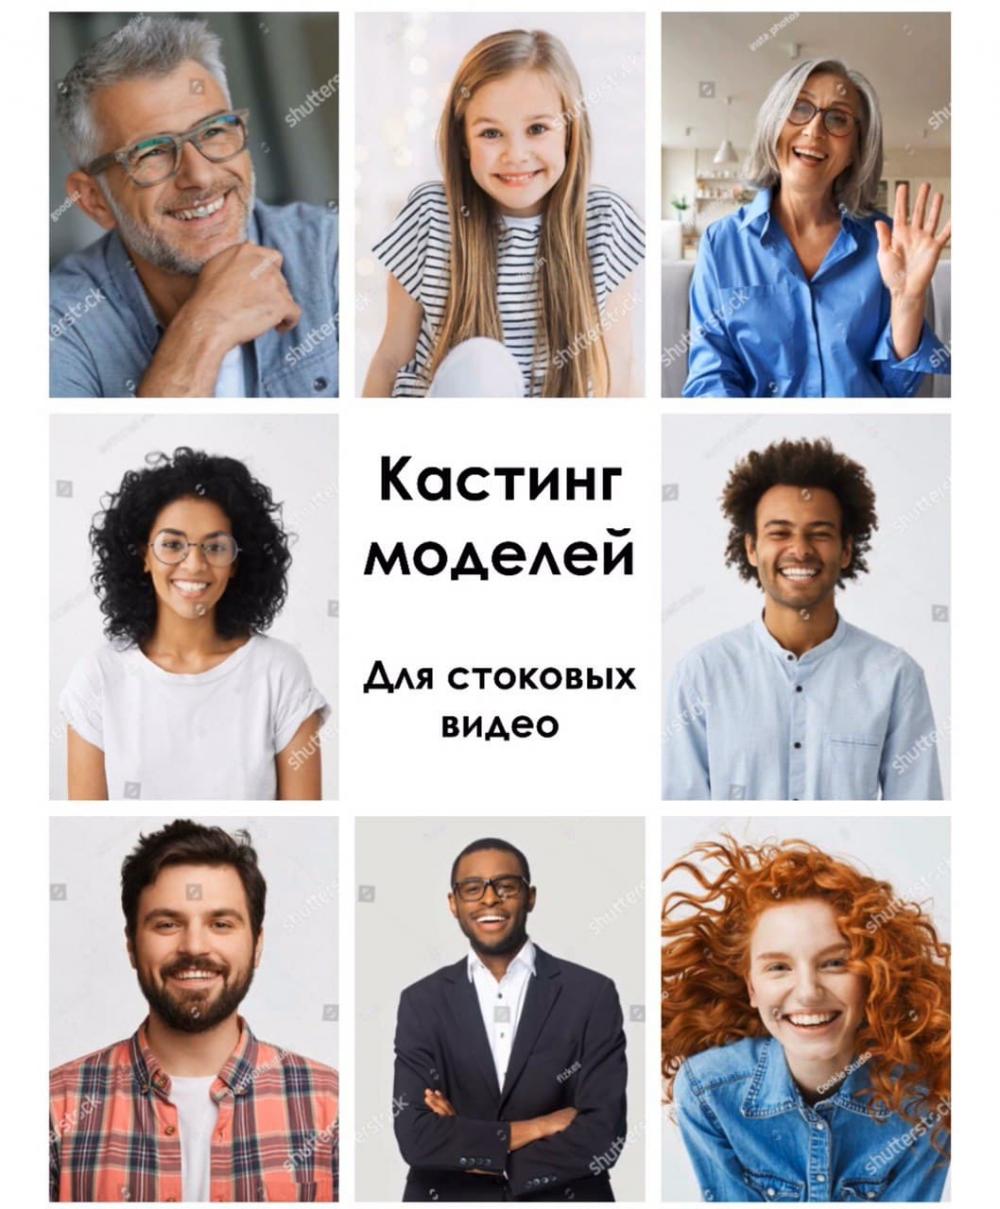 Кастинг в Харькове, поиск моделей для Стоков